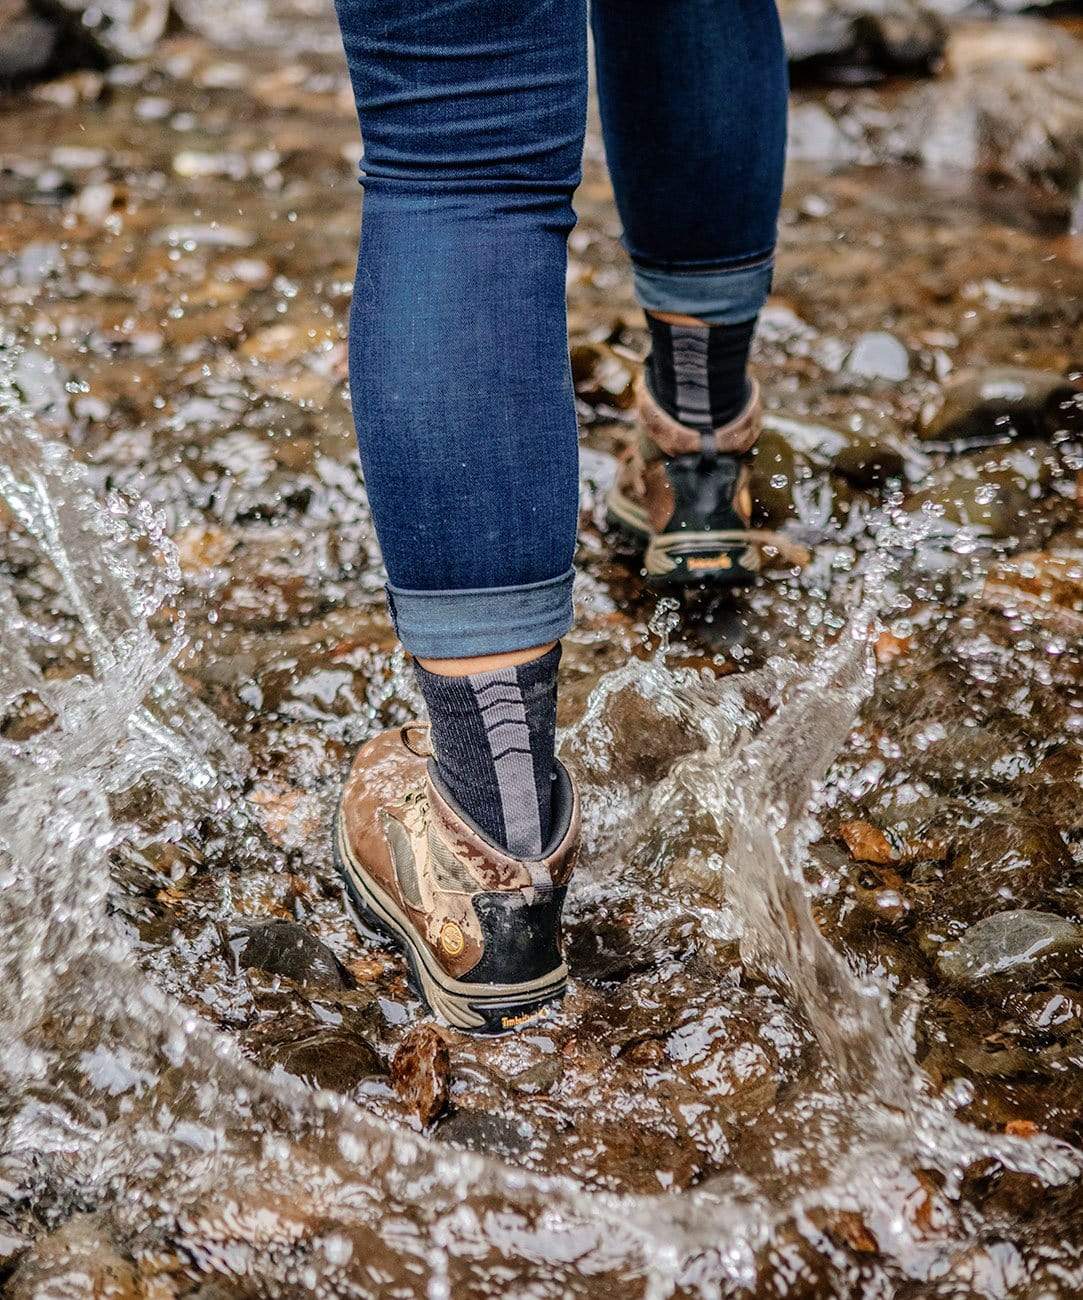 Crosspoint Essentials Waterproof Socks